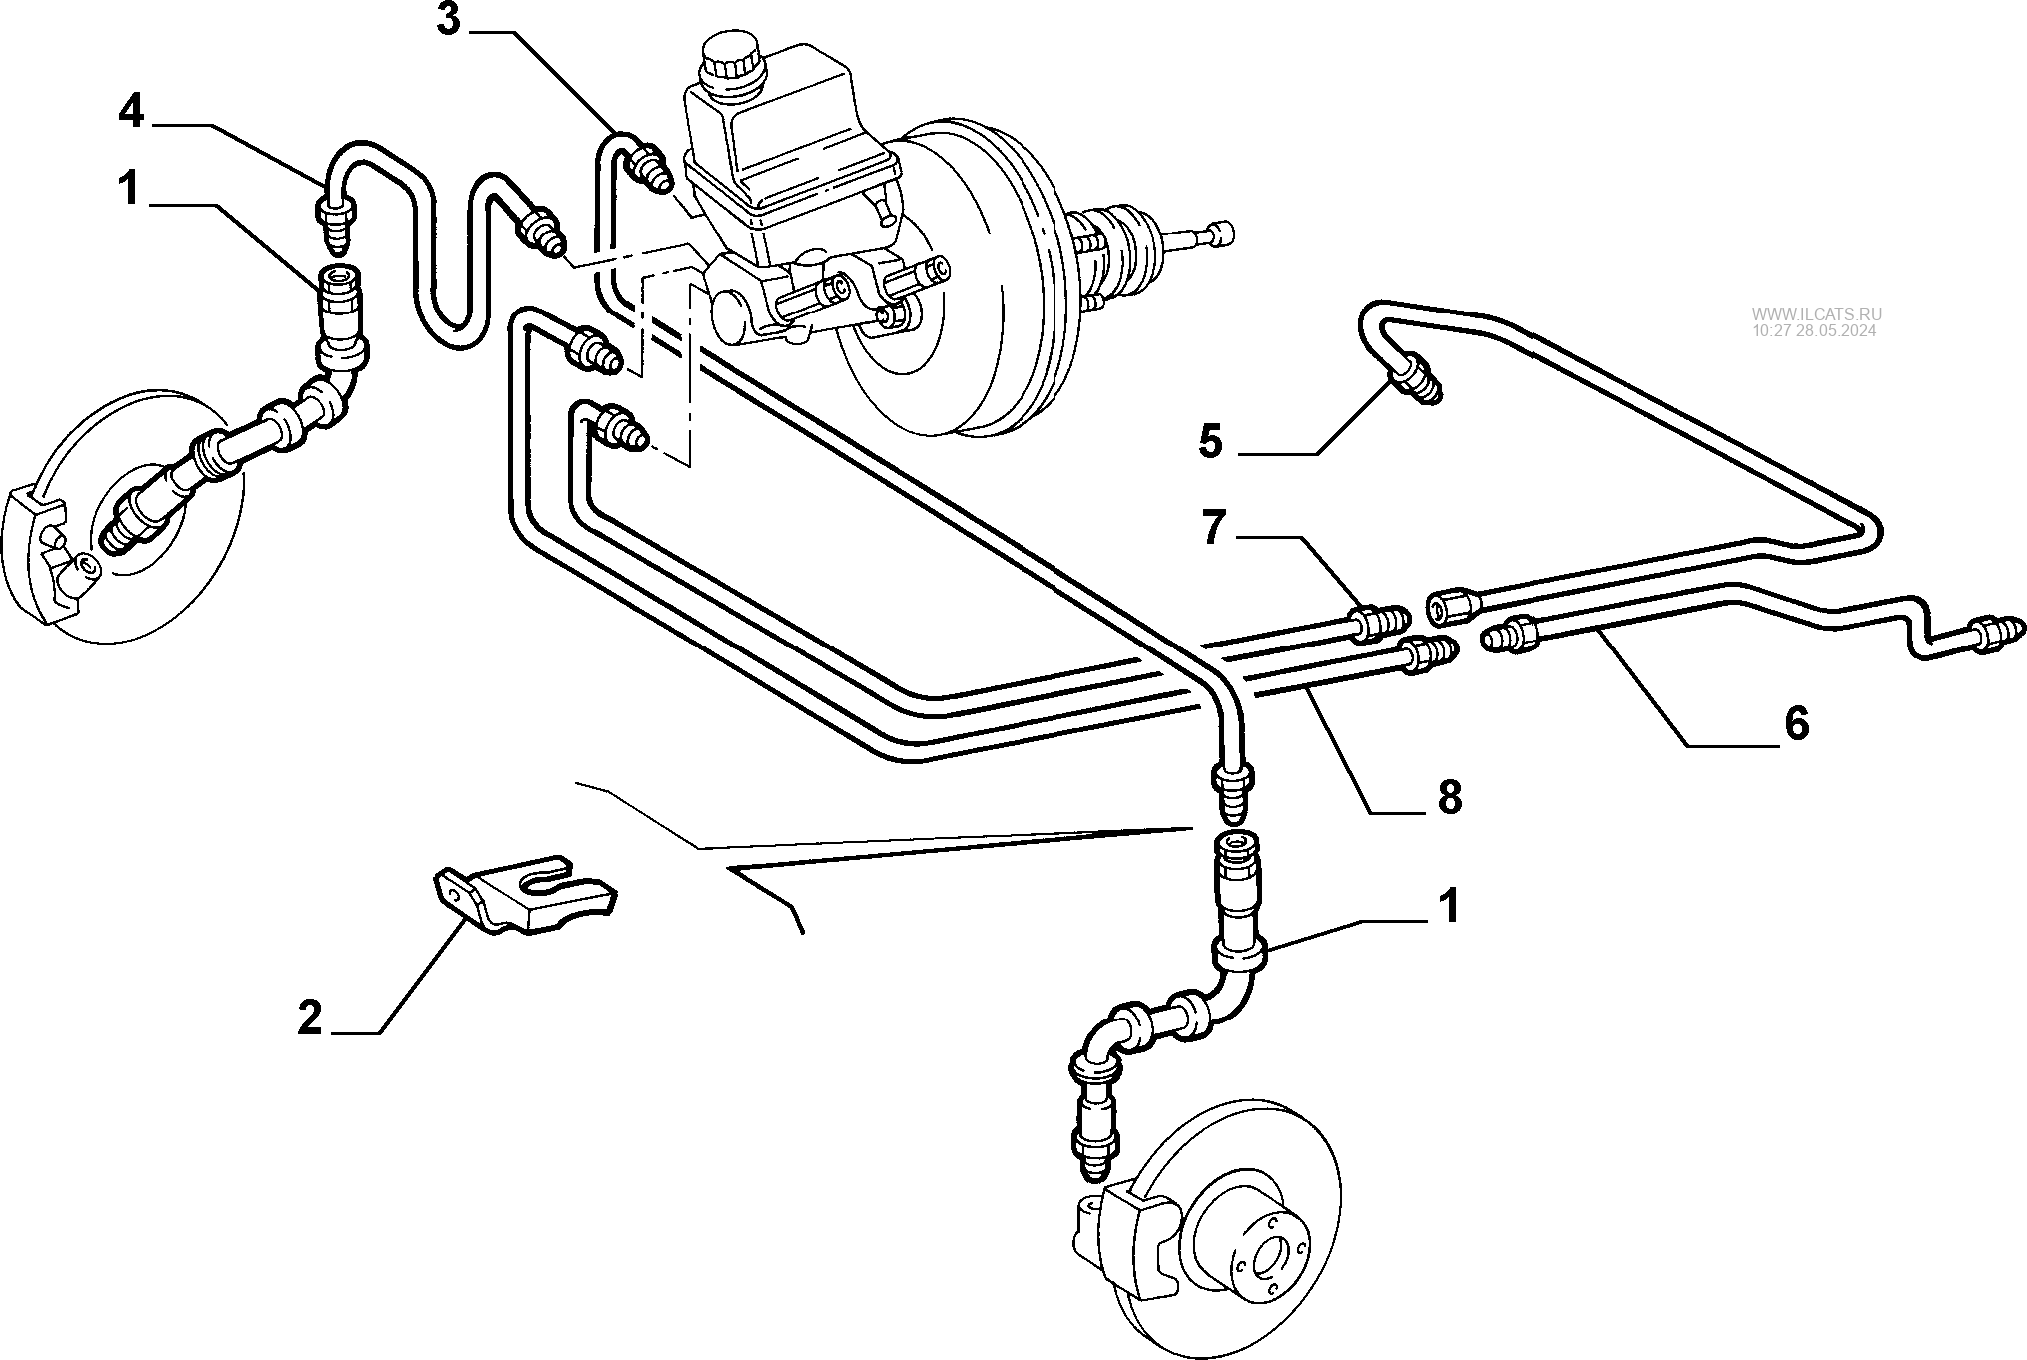 Схема тормозной системы фиат альбеа - фото